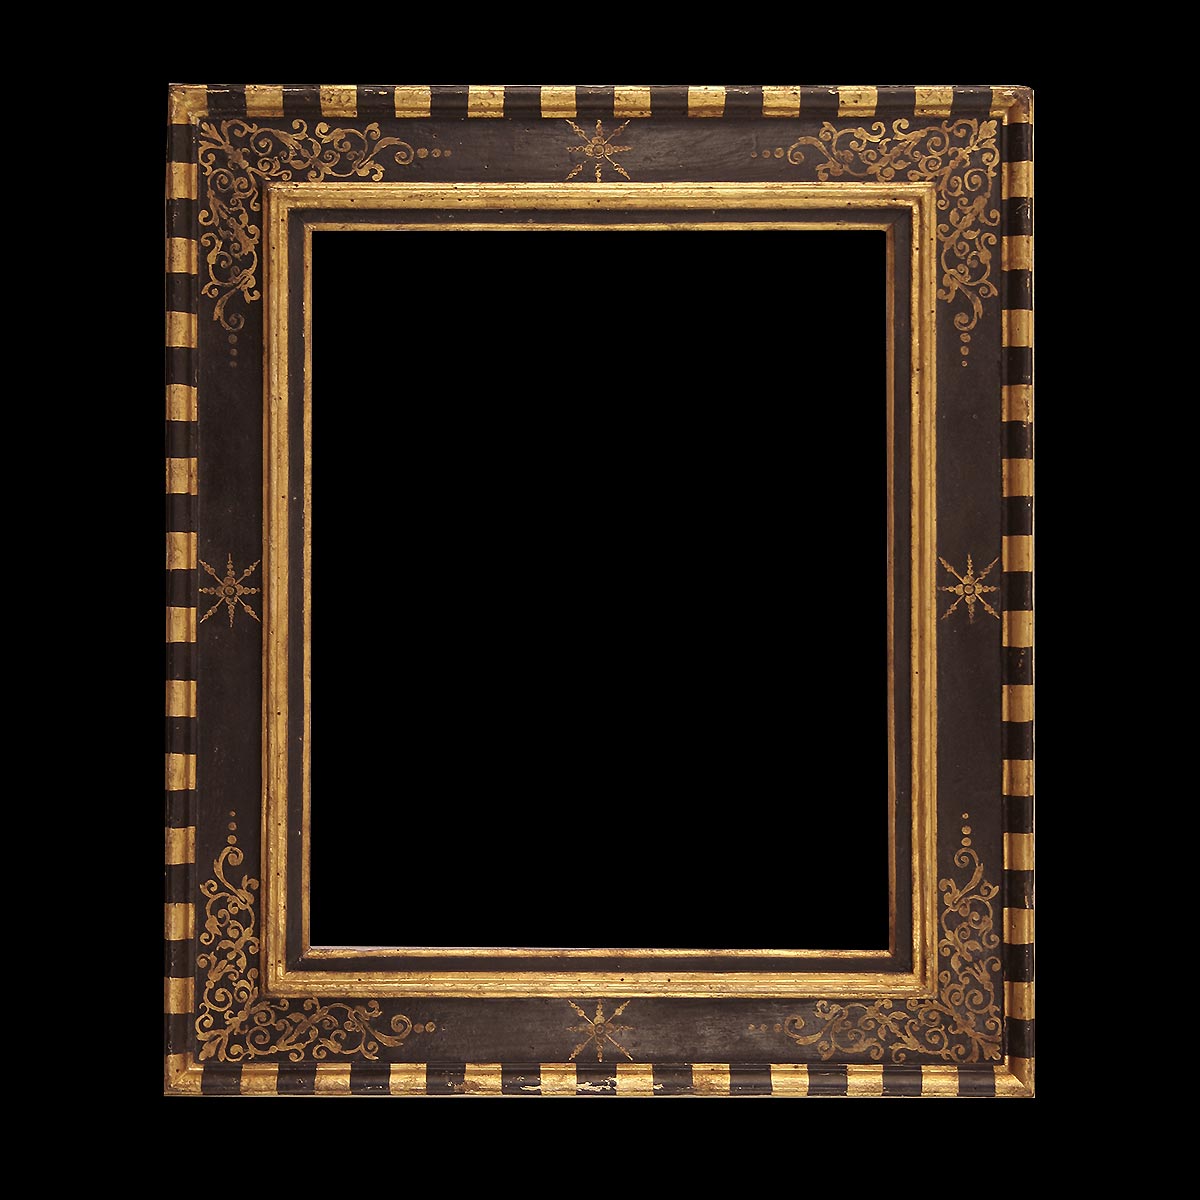 FRAMES, Preloved Frames, Picture Frames, Gold Frames, Ornate Frames, Wall  Gallery 